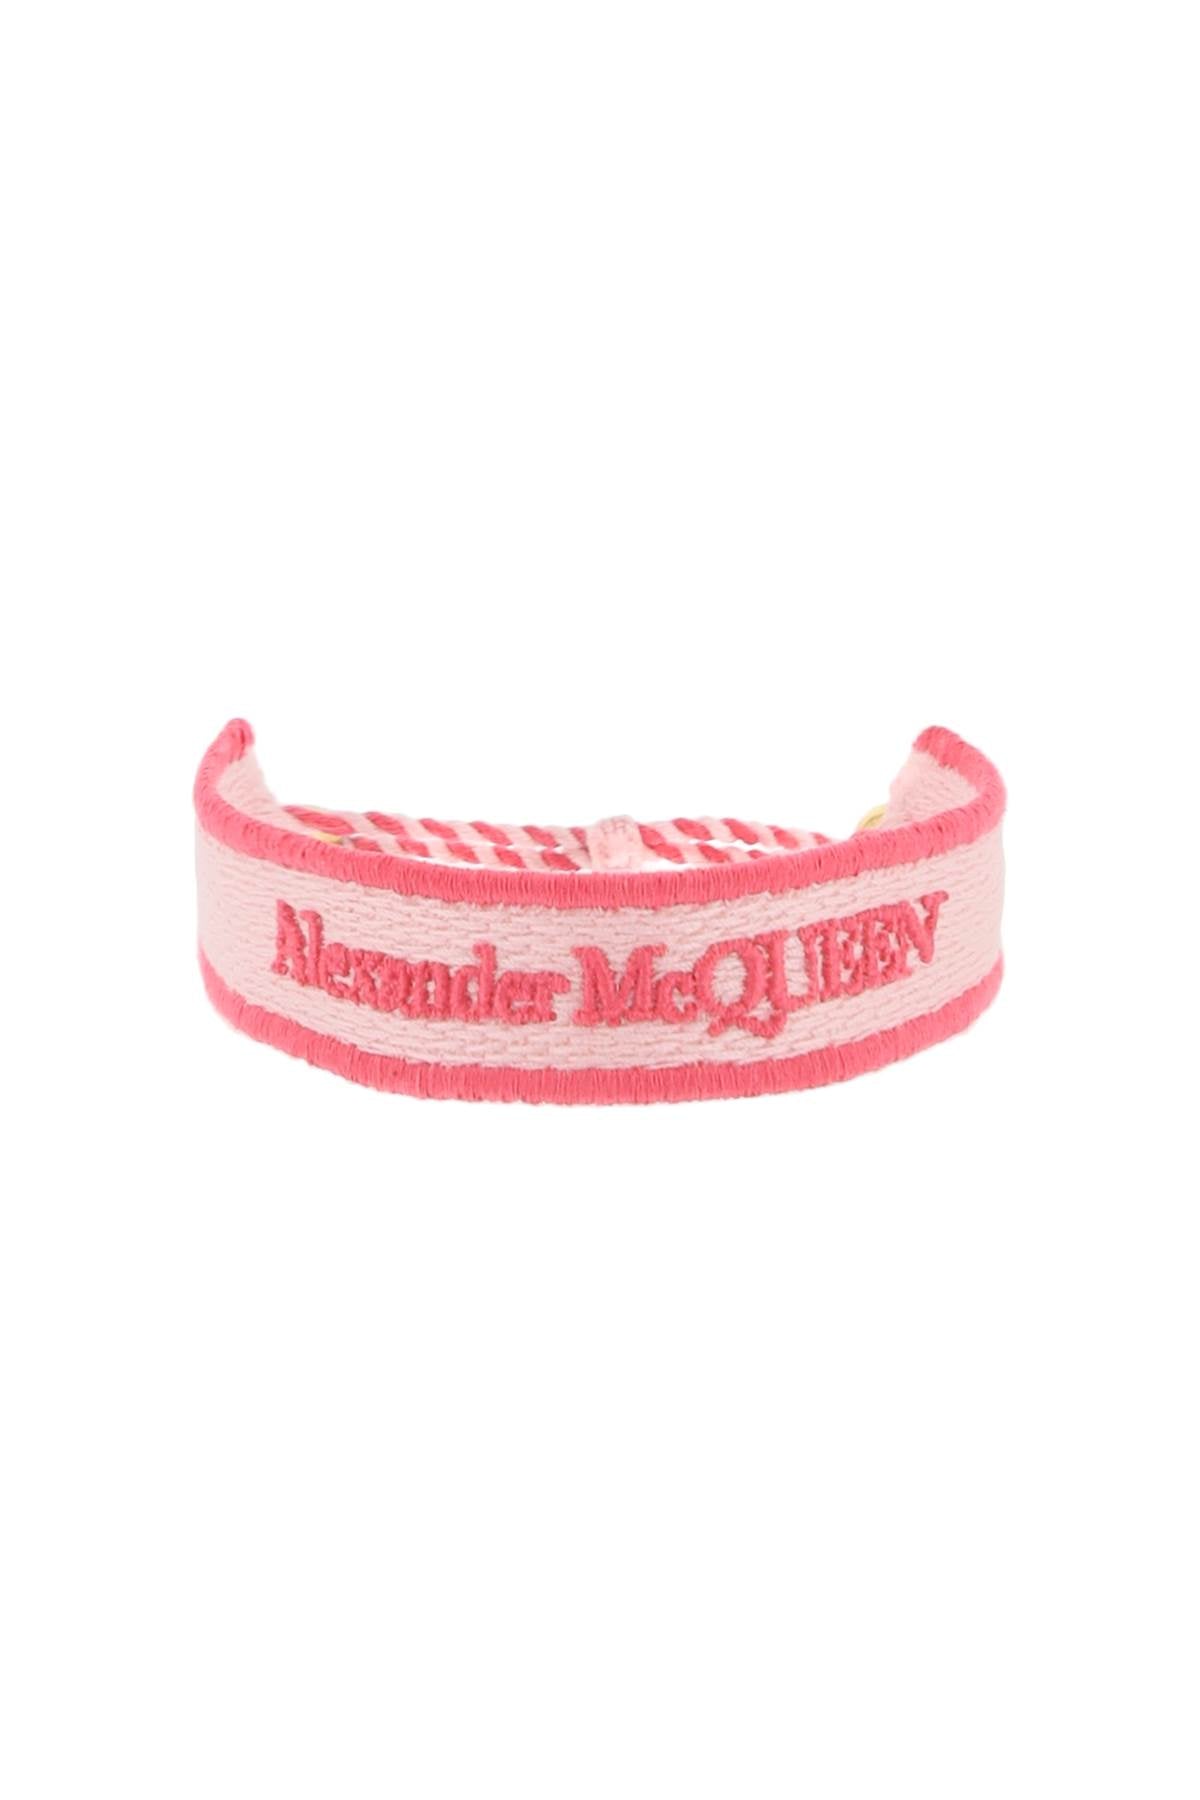 Alexander Mcqueen Alexander mcqueen embroidered bracelet